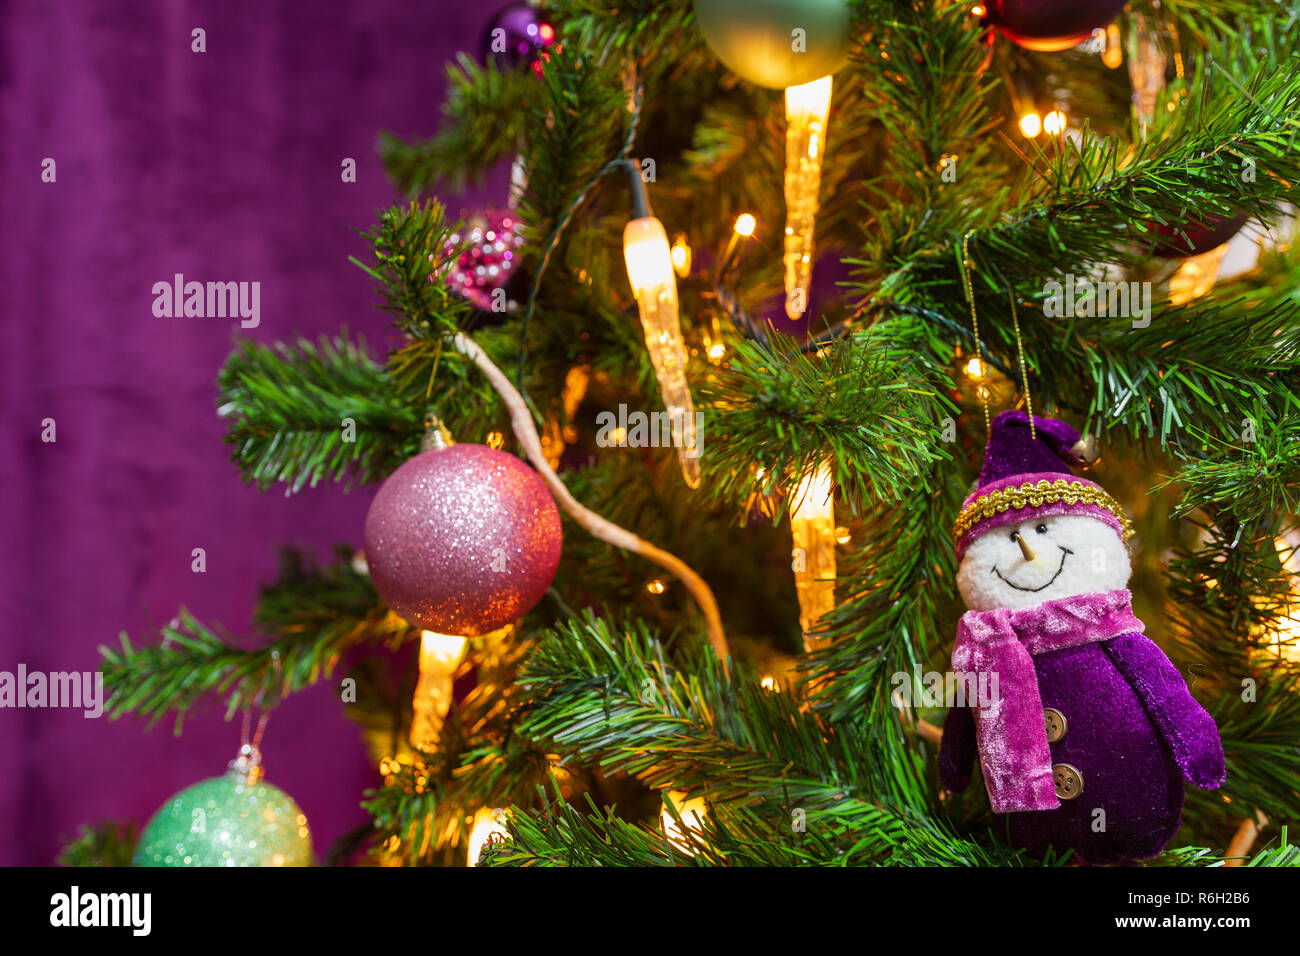 Weihnachtsbaum in einem lila Thema mit einem prominenten lila Schneemann und dekorative lila Bälle und Kerzenlicht in Sicht eingerichtet Stockfoto